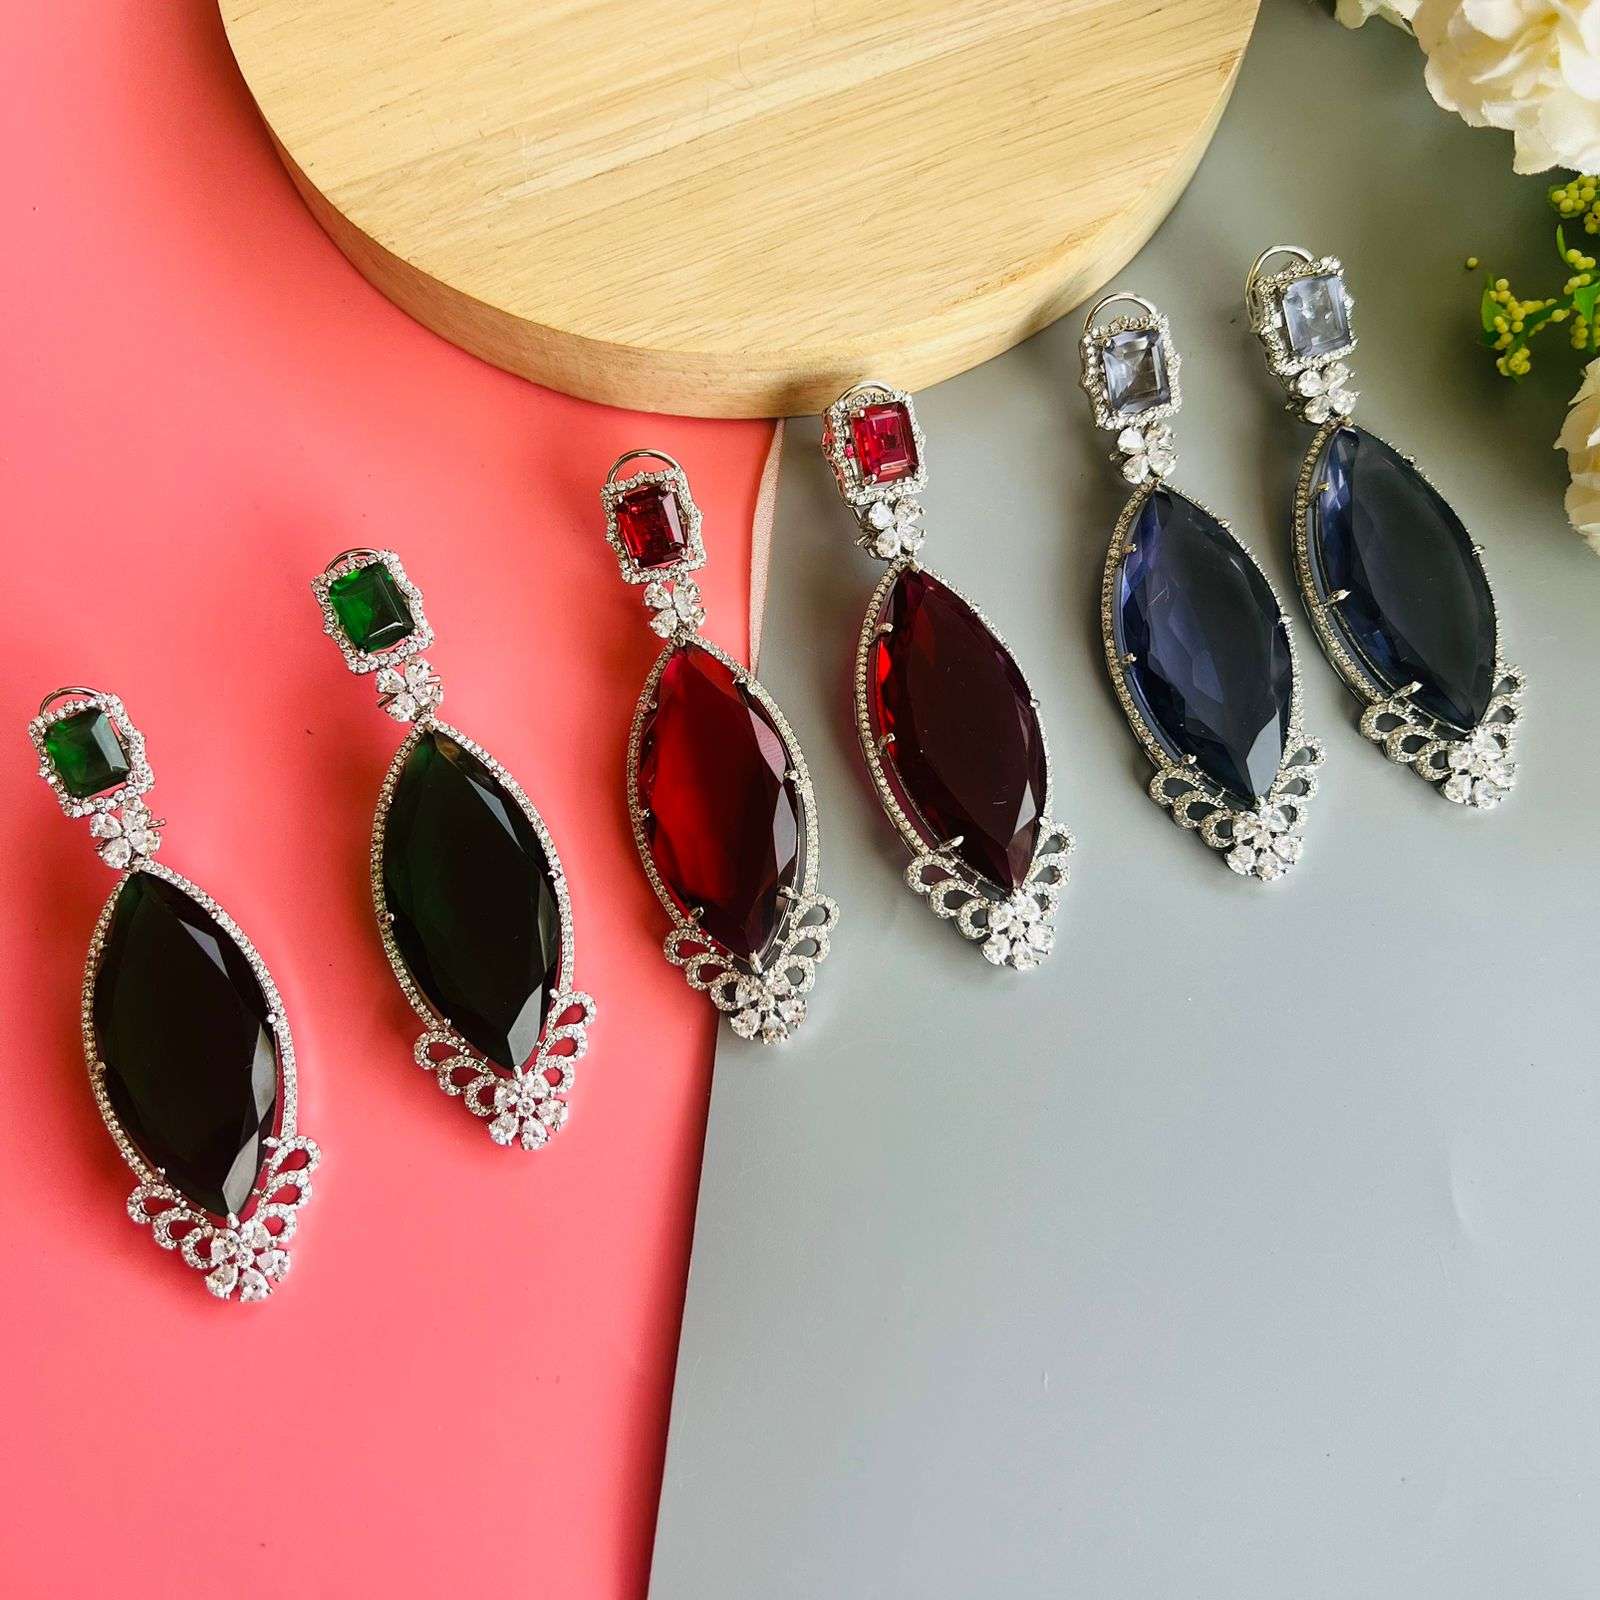 Ad Kinjal earrings Velvet box by Shweta